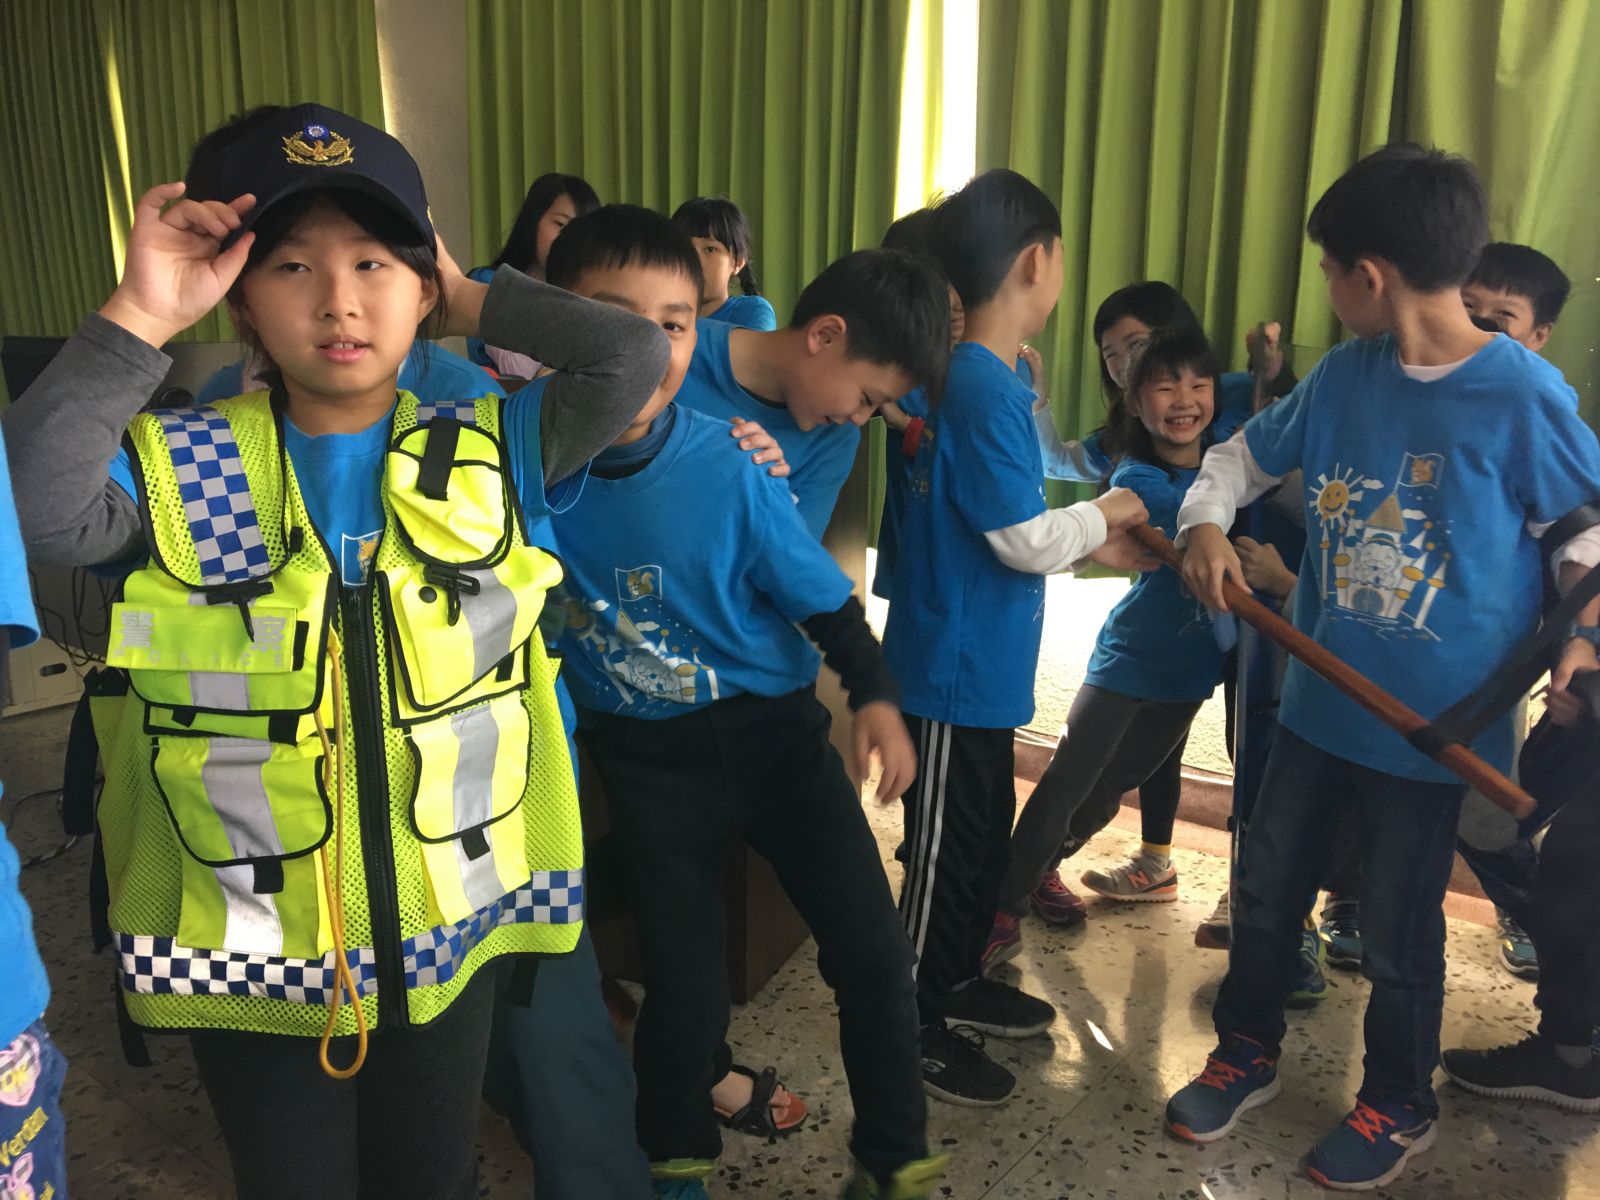 小學生參訪警局 興奮穿員警裝備還製作可愛謝卡 | 文章內置圖片